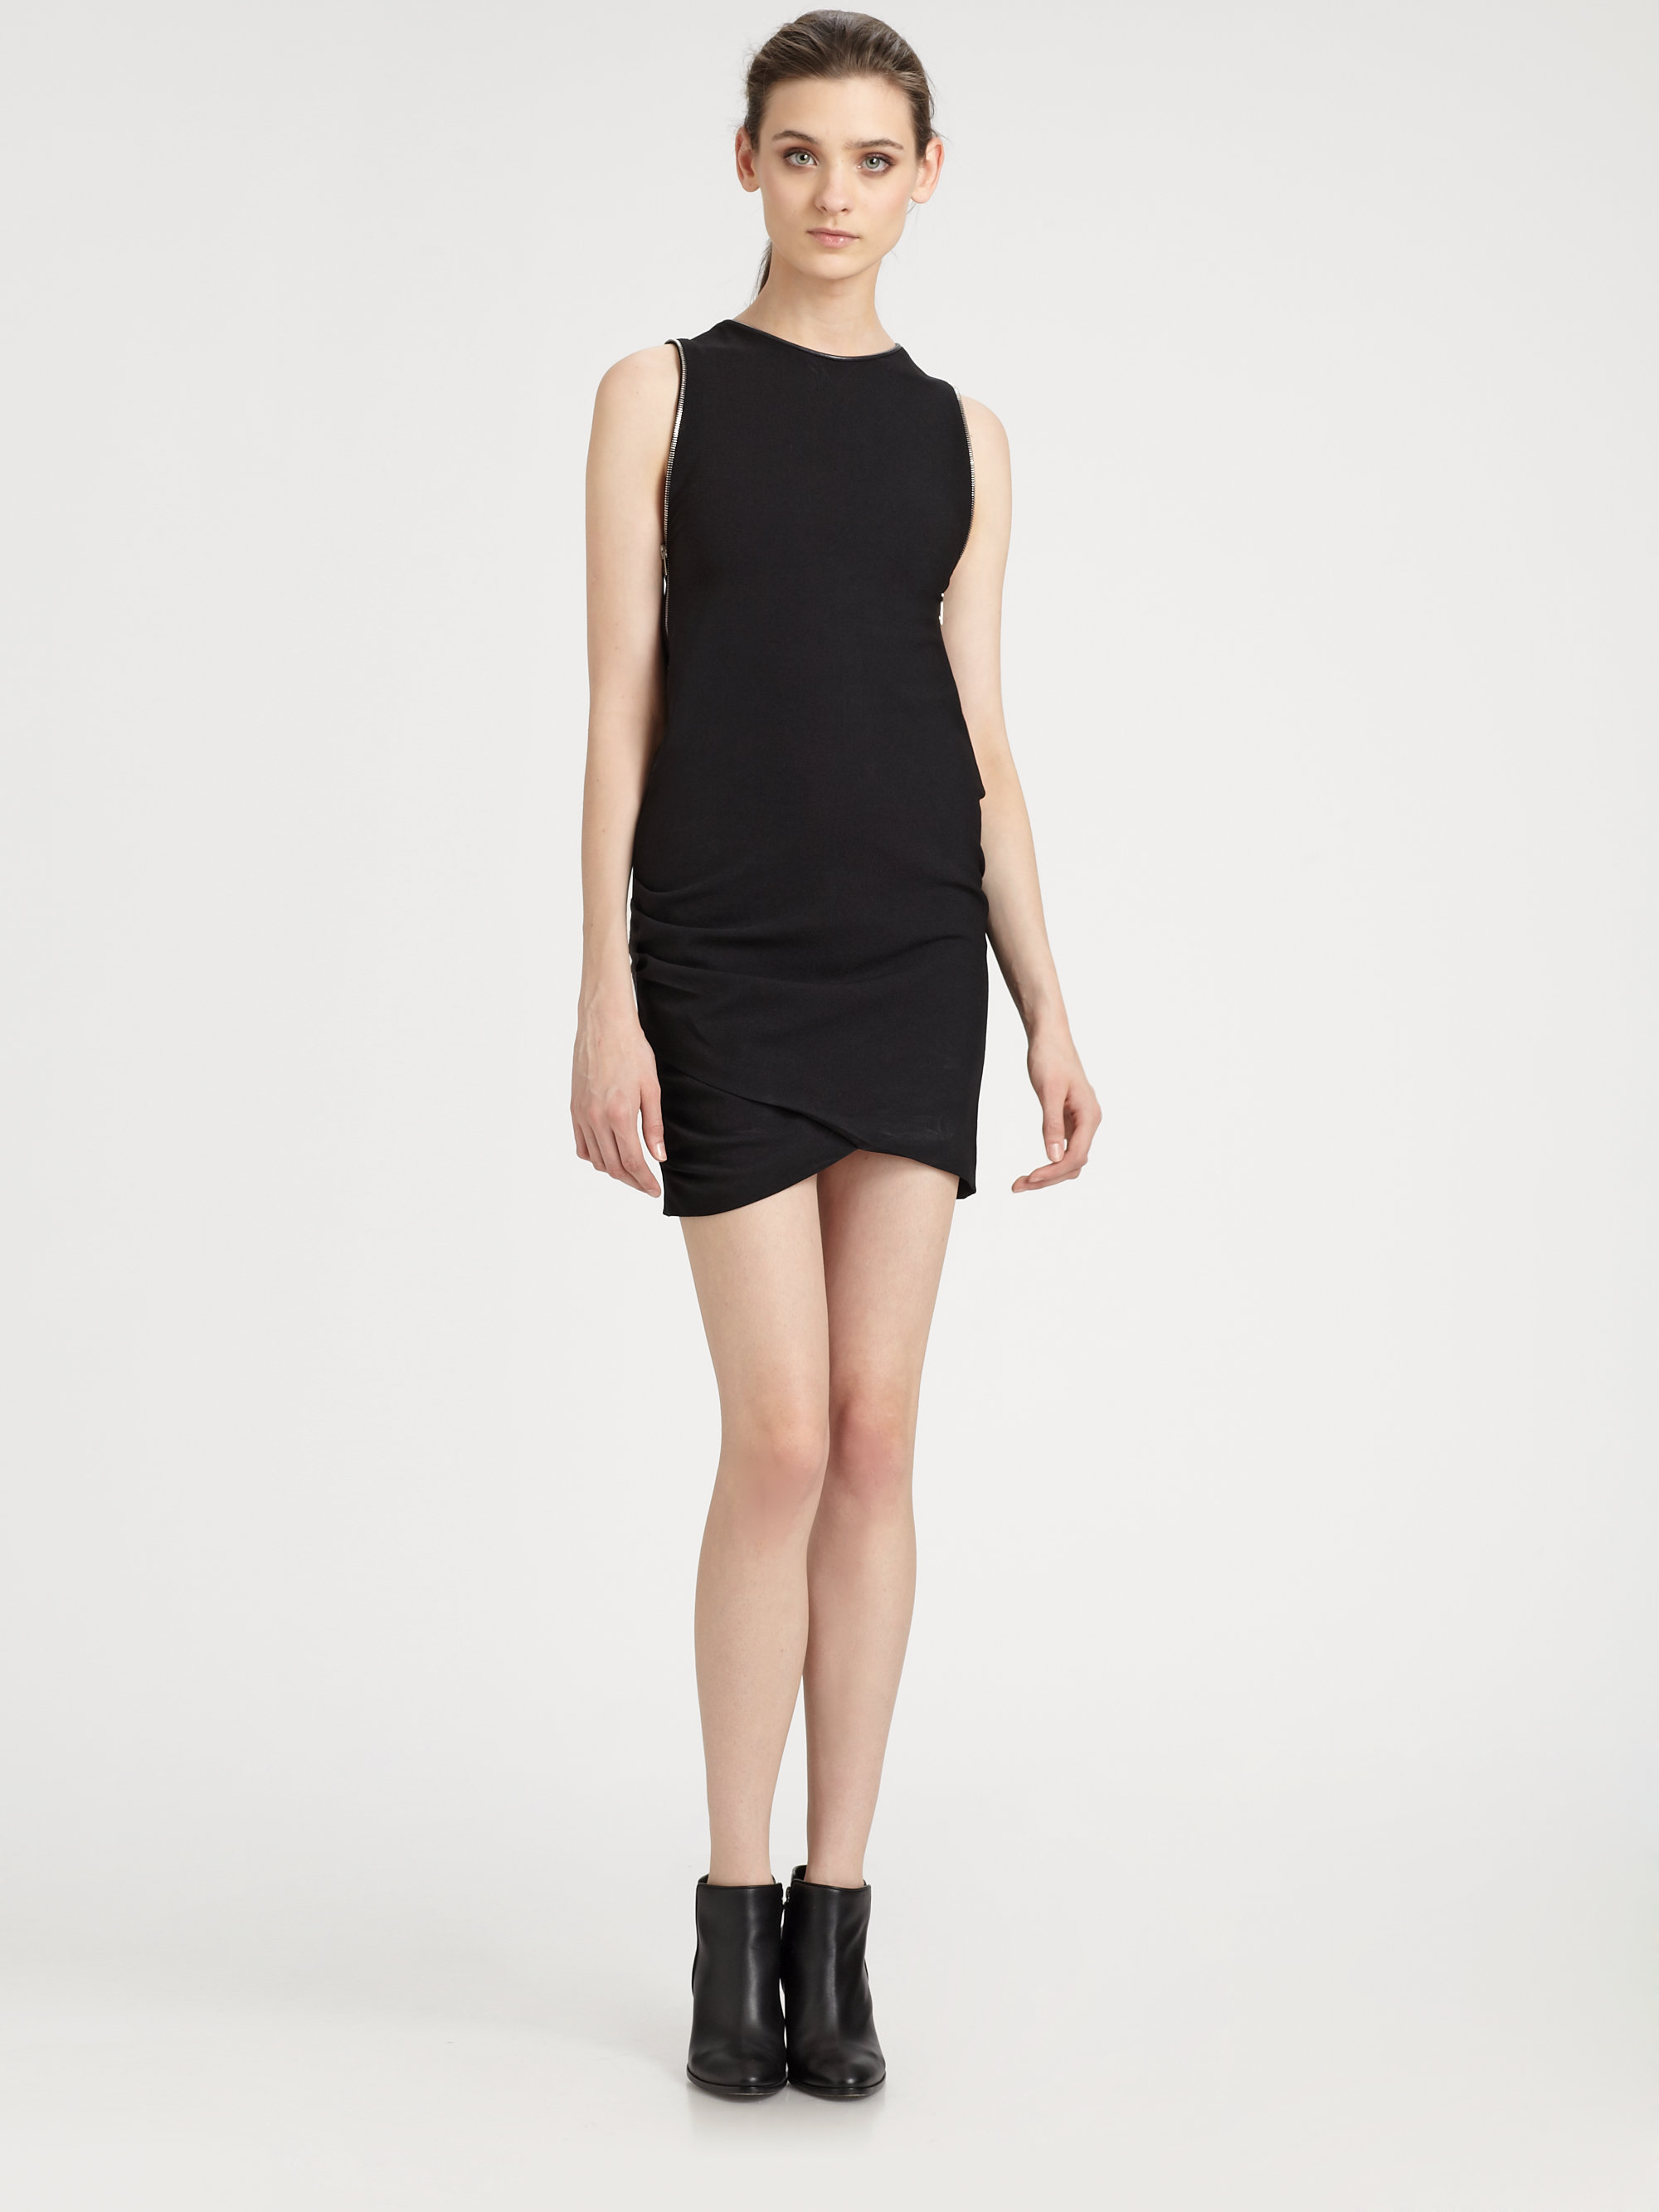 Lyst - Iro Iseline Dress in Black